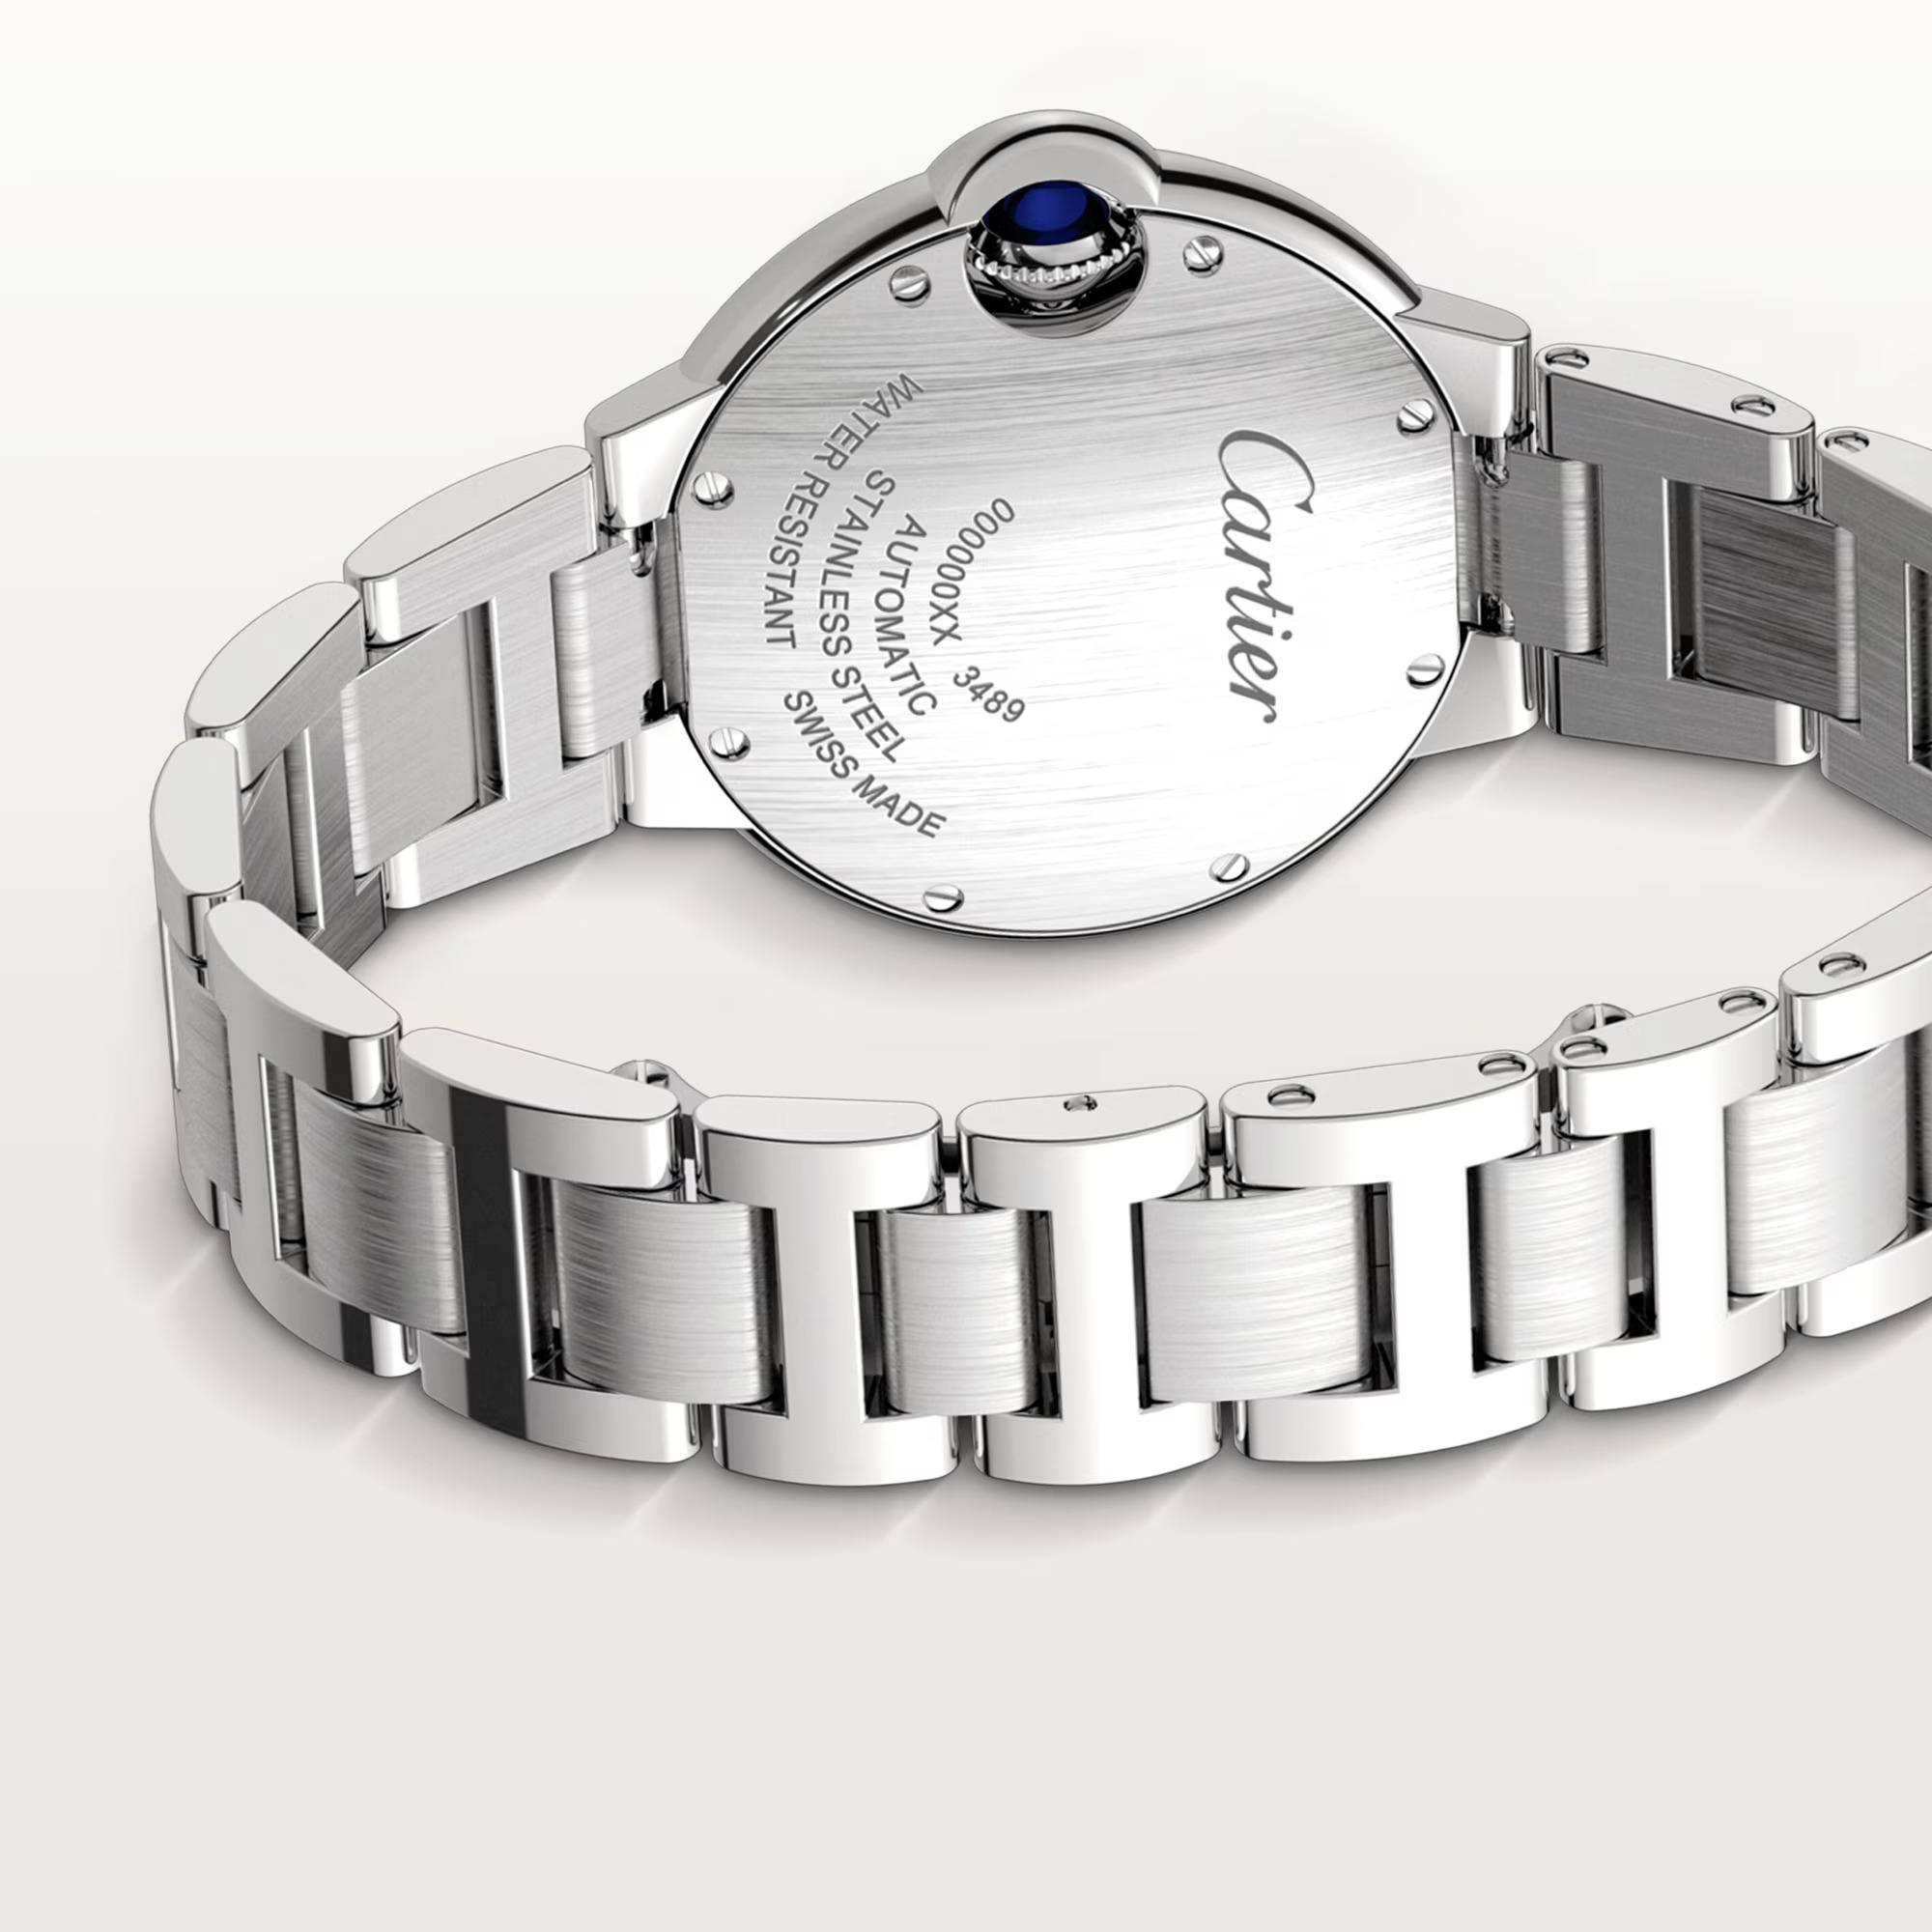 Ballon de Cartier Watch with Diamonds, 33mm 6